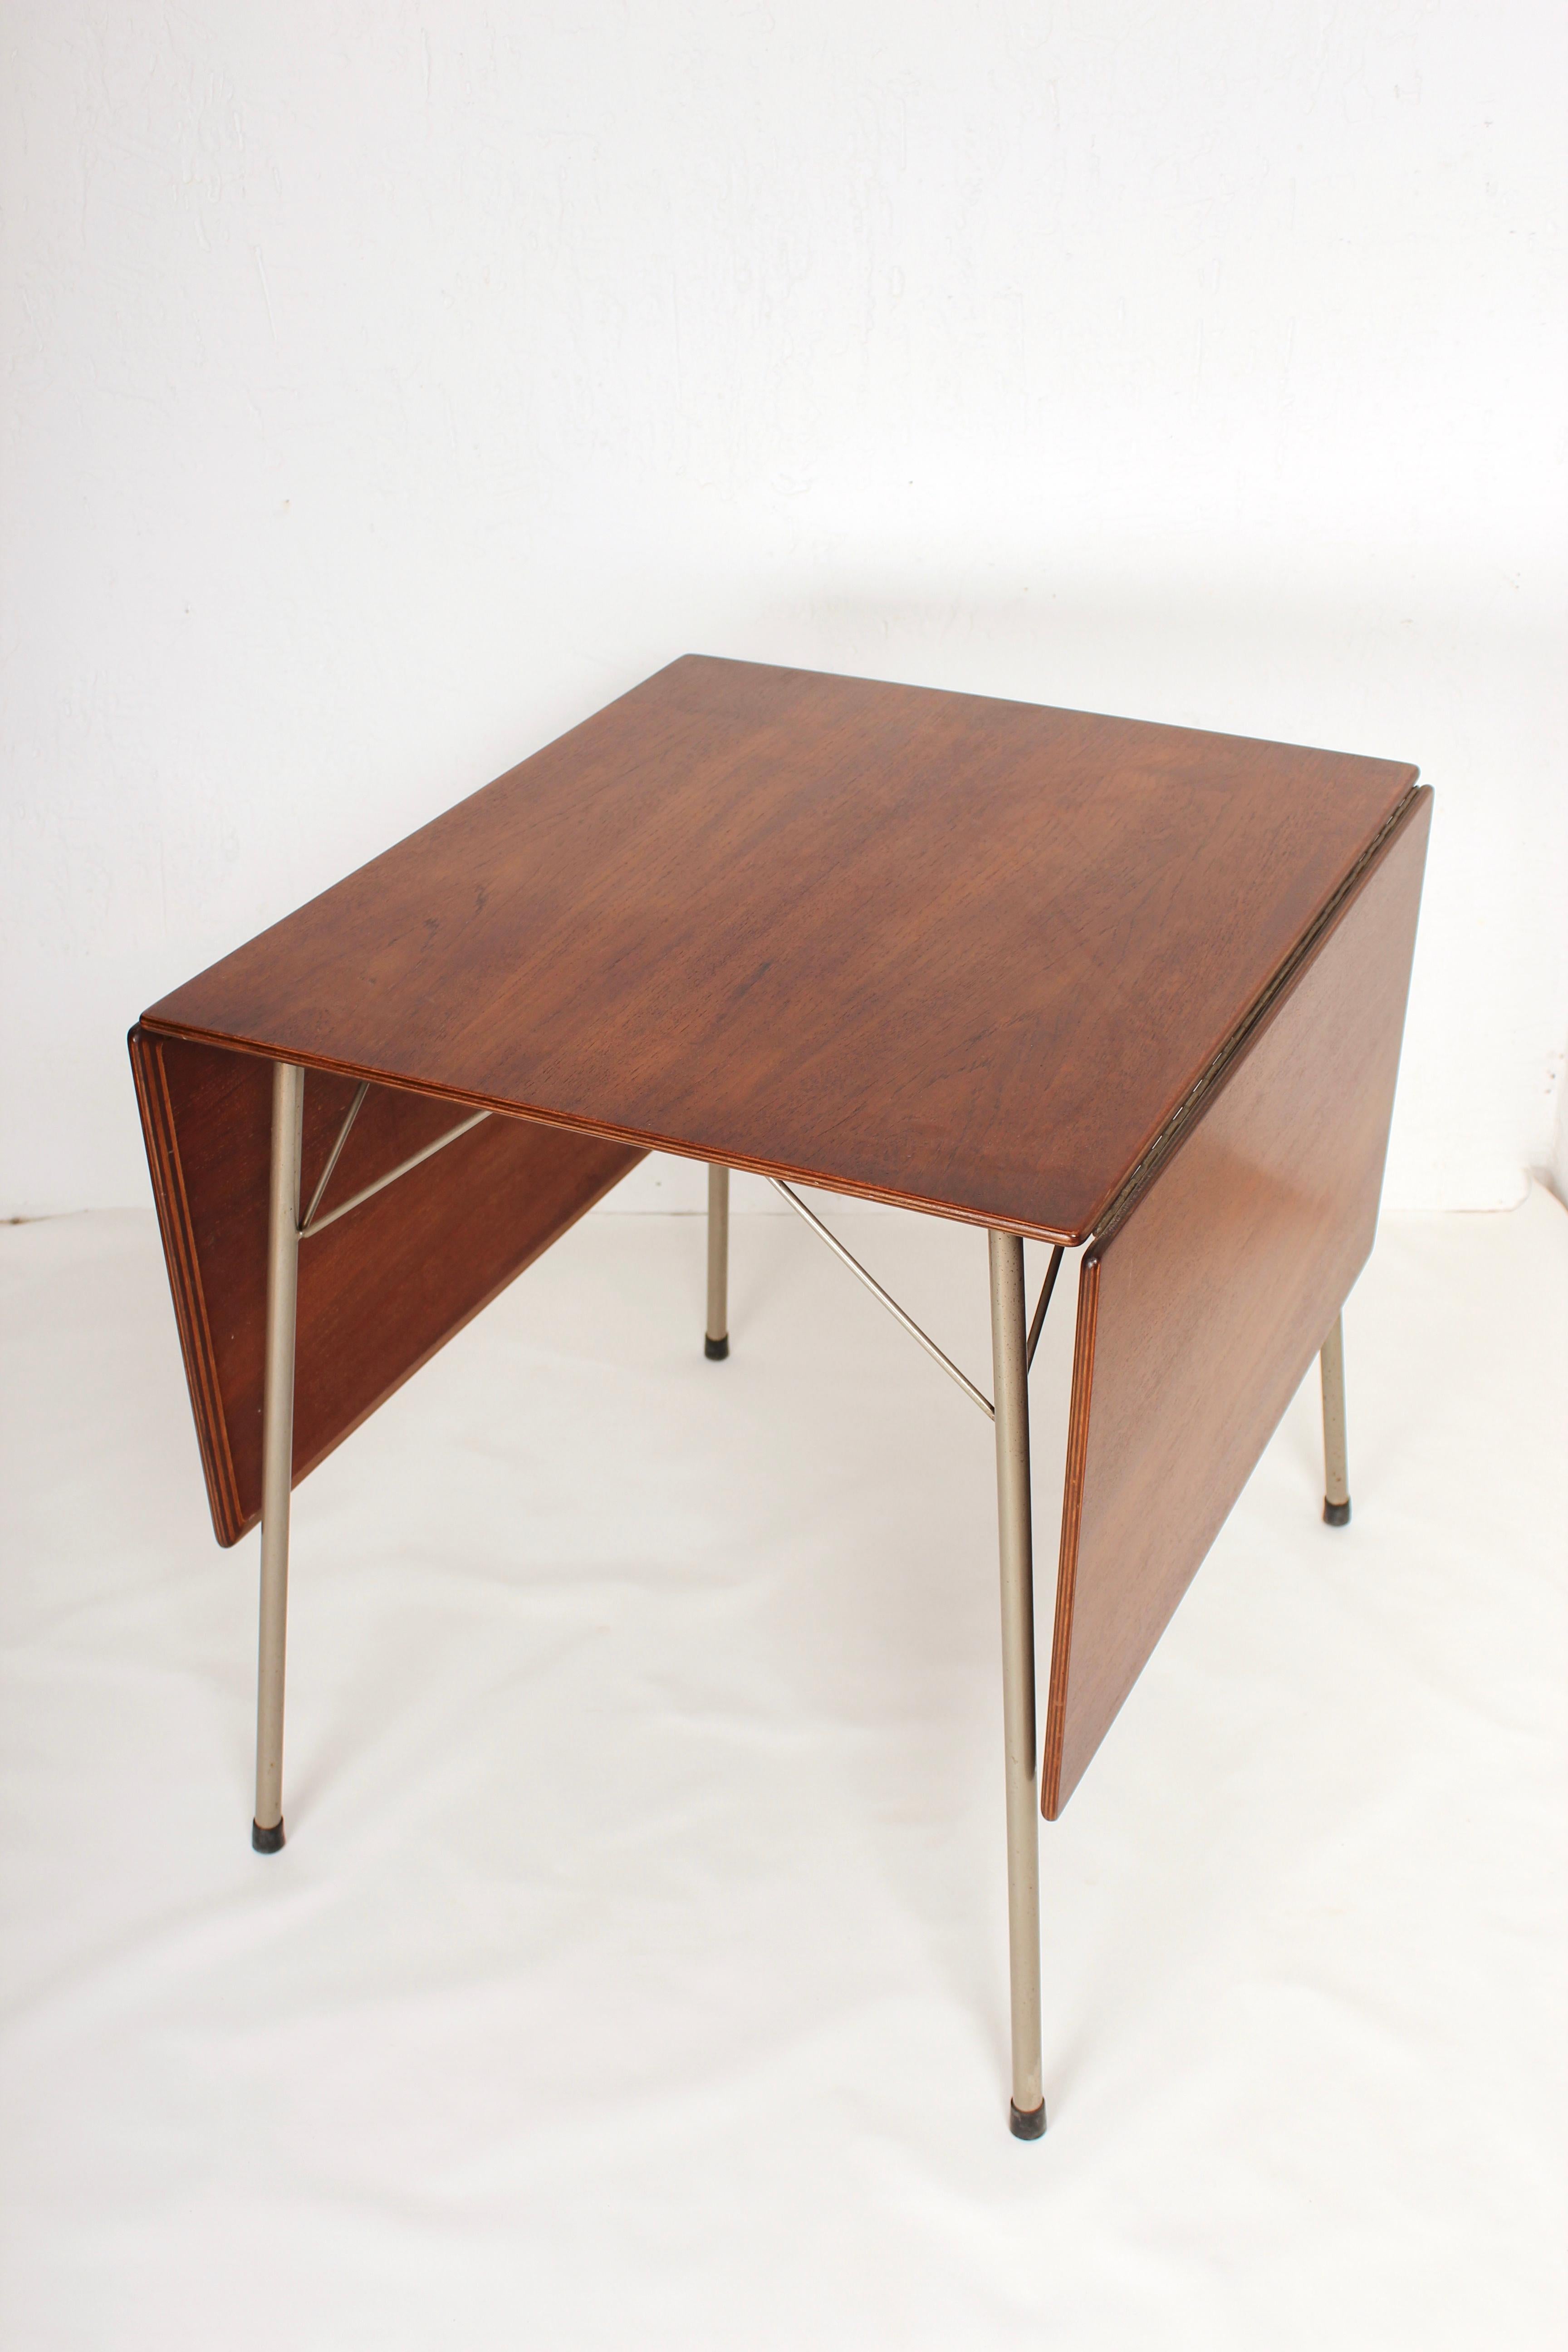 Mid-20th Century Danish Folding Dining Table by Arne Jacobsen for Fritz Hansen Model 3601, 1950s